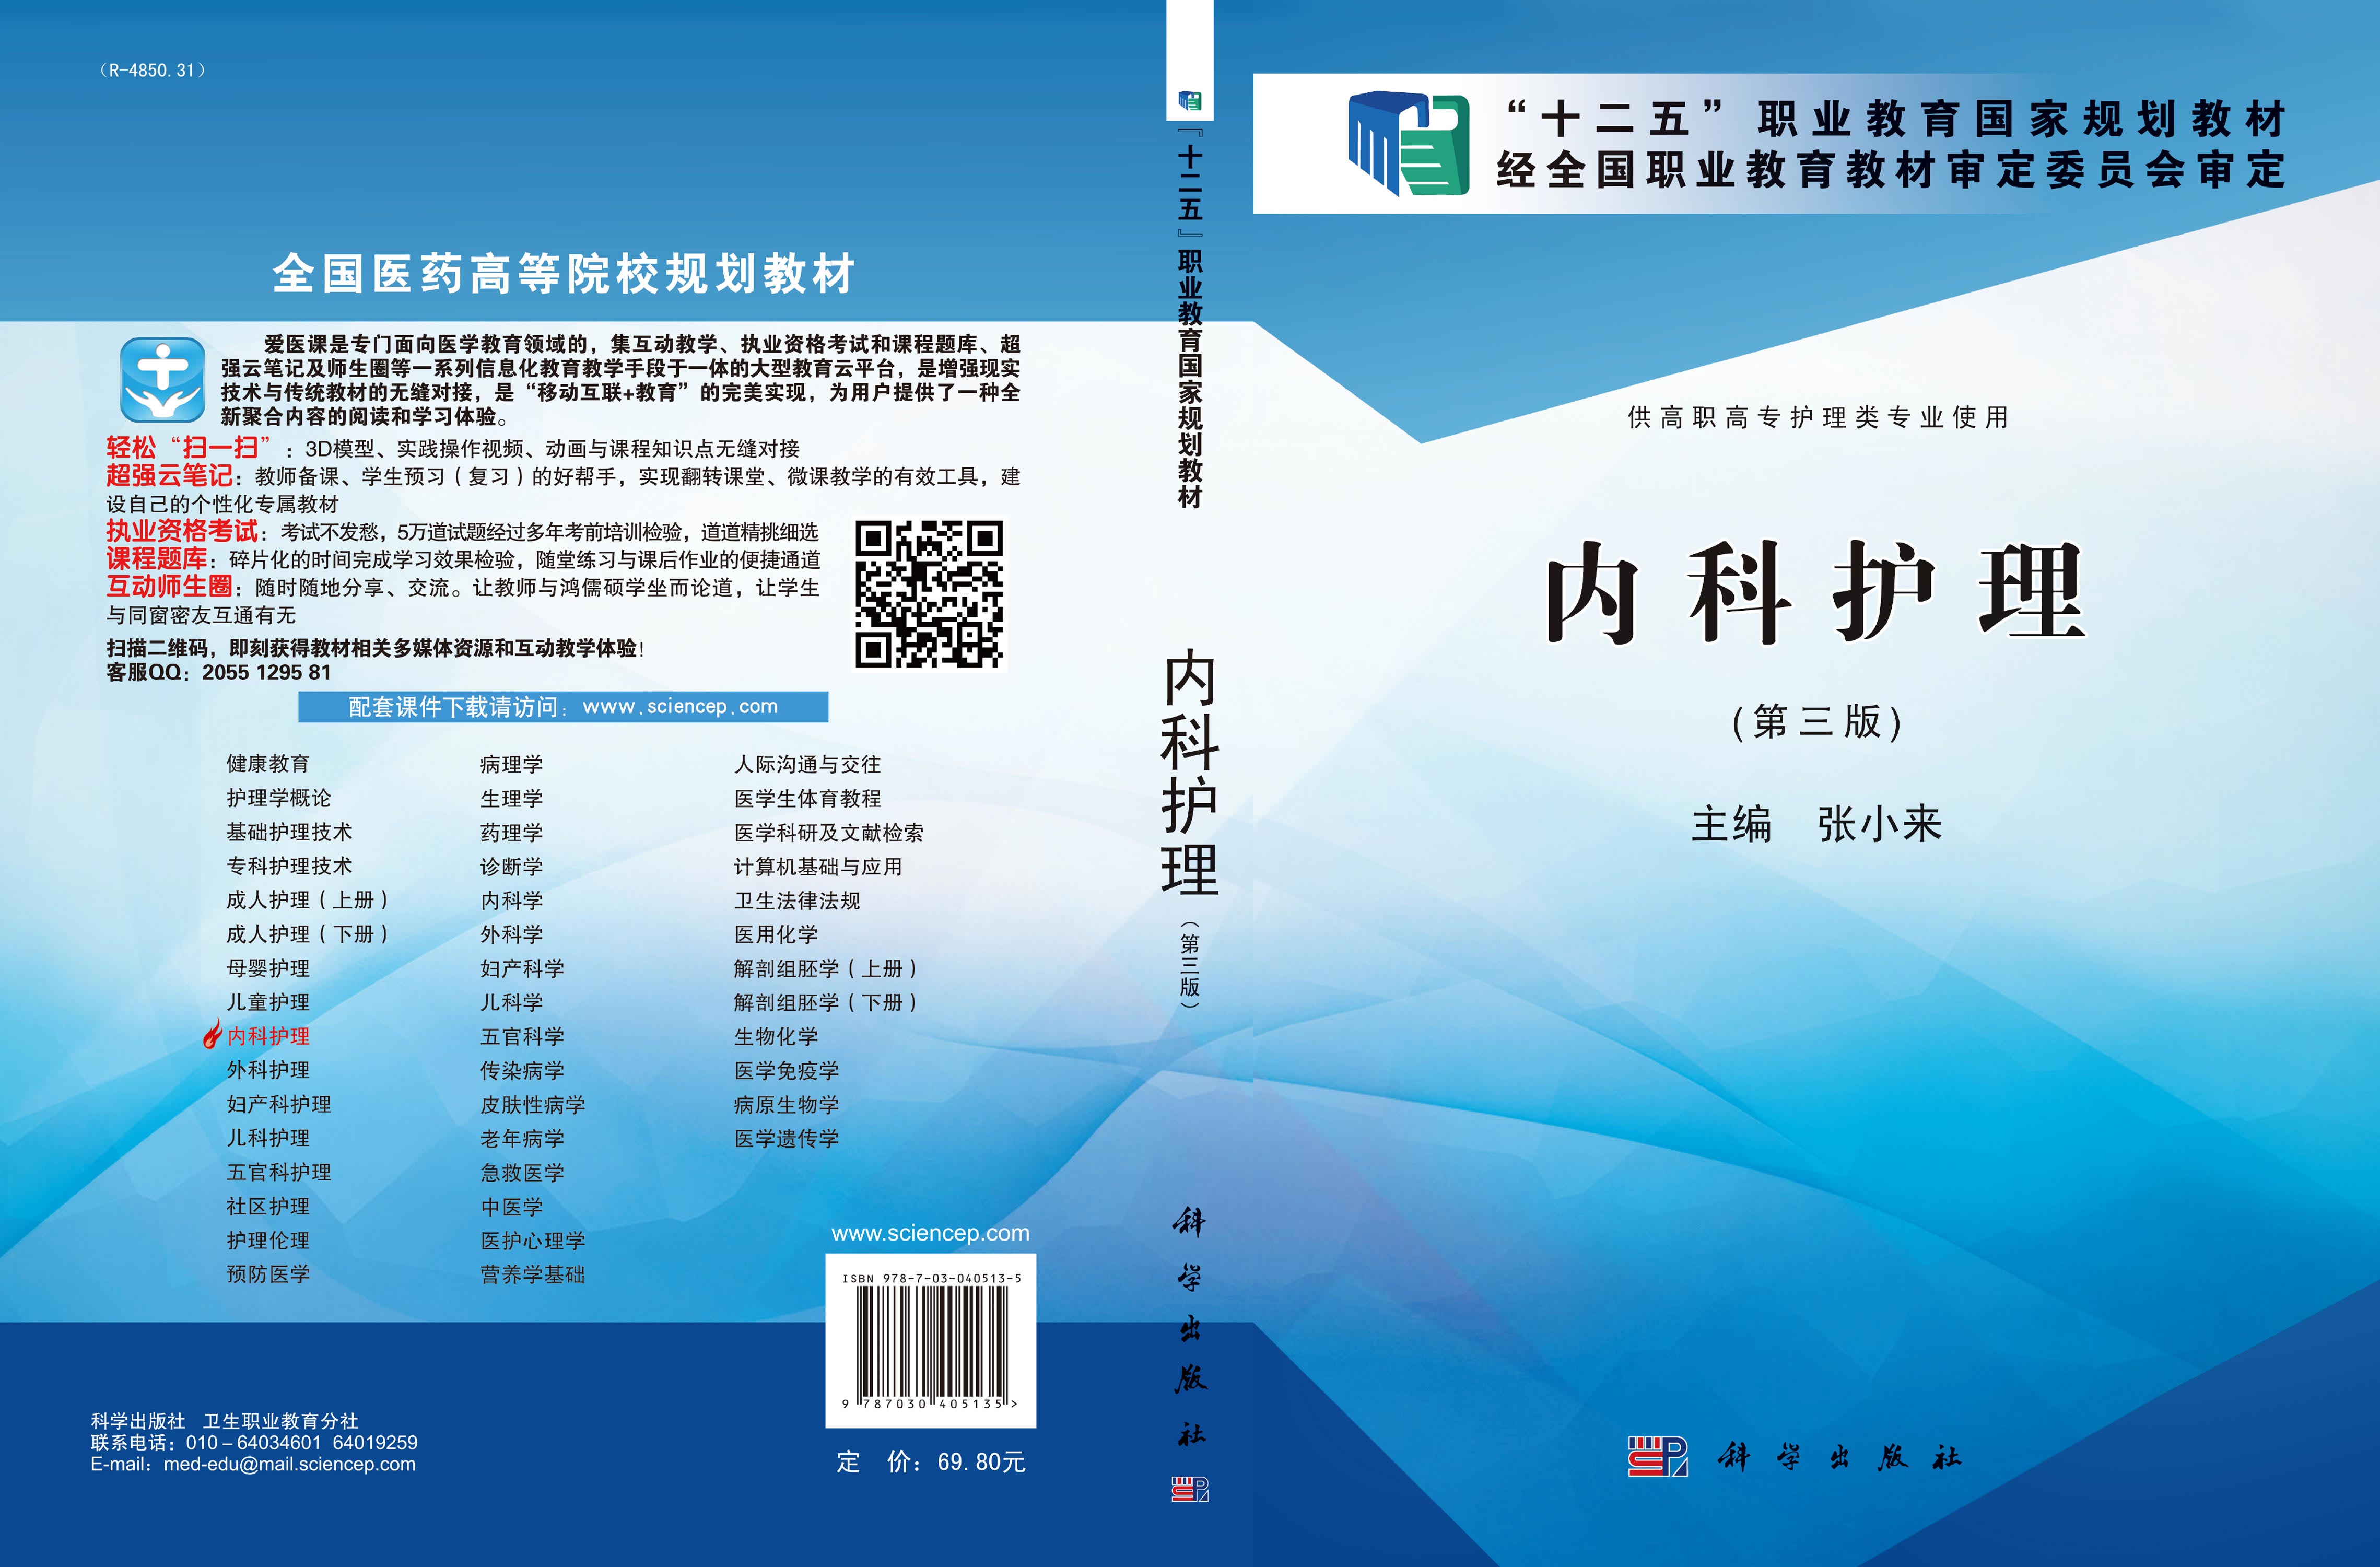 《临床研究护士指南》新书分享会在沪举行 填补行业教材空白